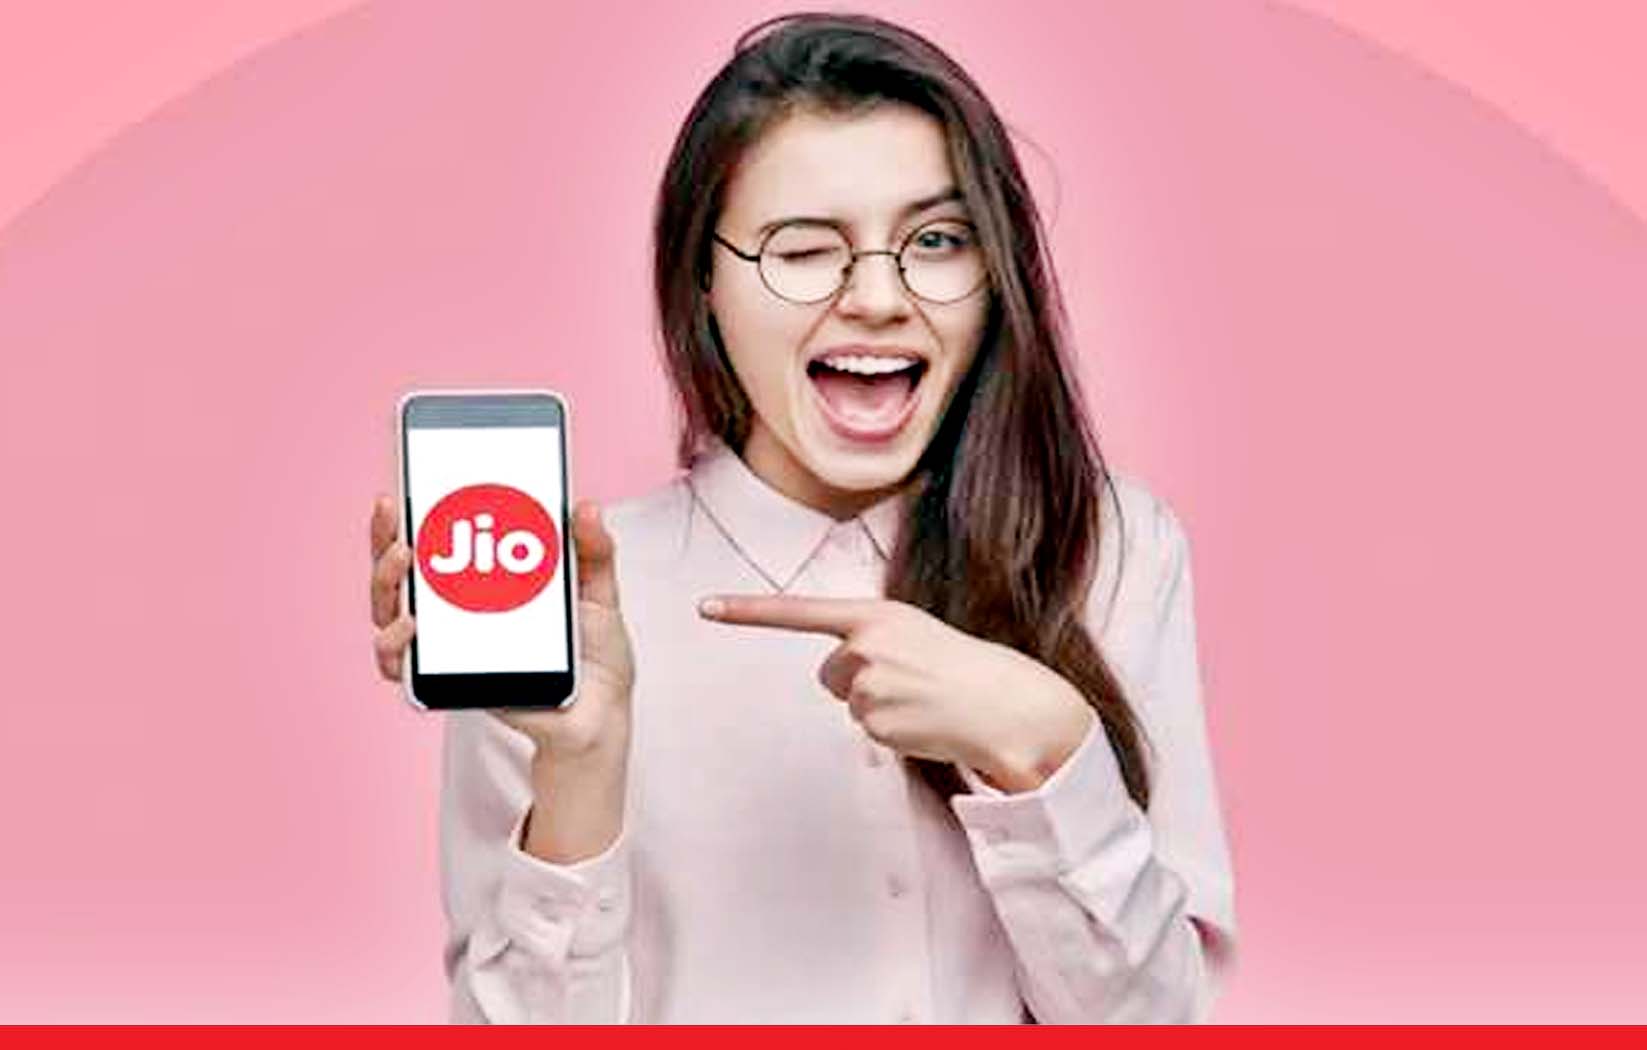 Jio ने 1 रुपये वाला प्रीपेड प्लान किया लॉन्च, 30 दिन की वैलिडिटी और डेटा भी